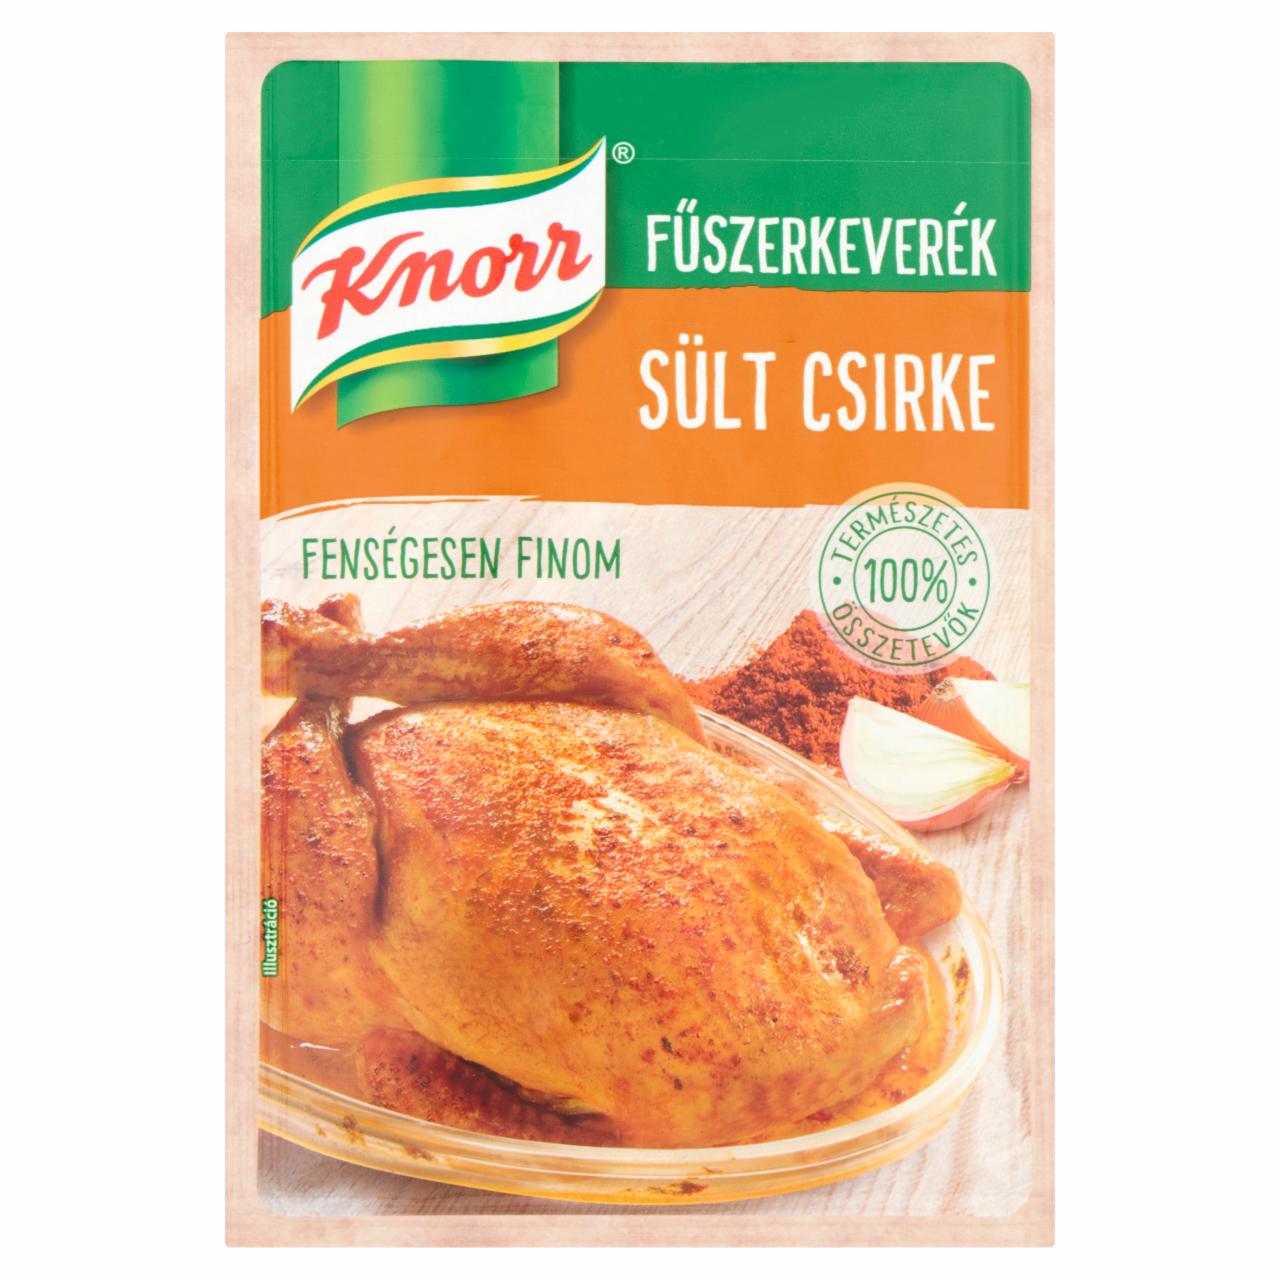 Képek - Knorr sült csirke fűszerkeverék 35 g